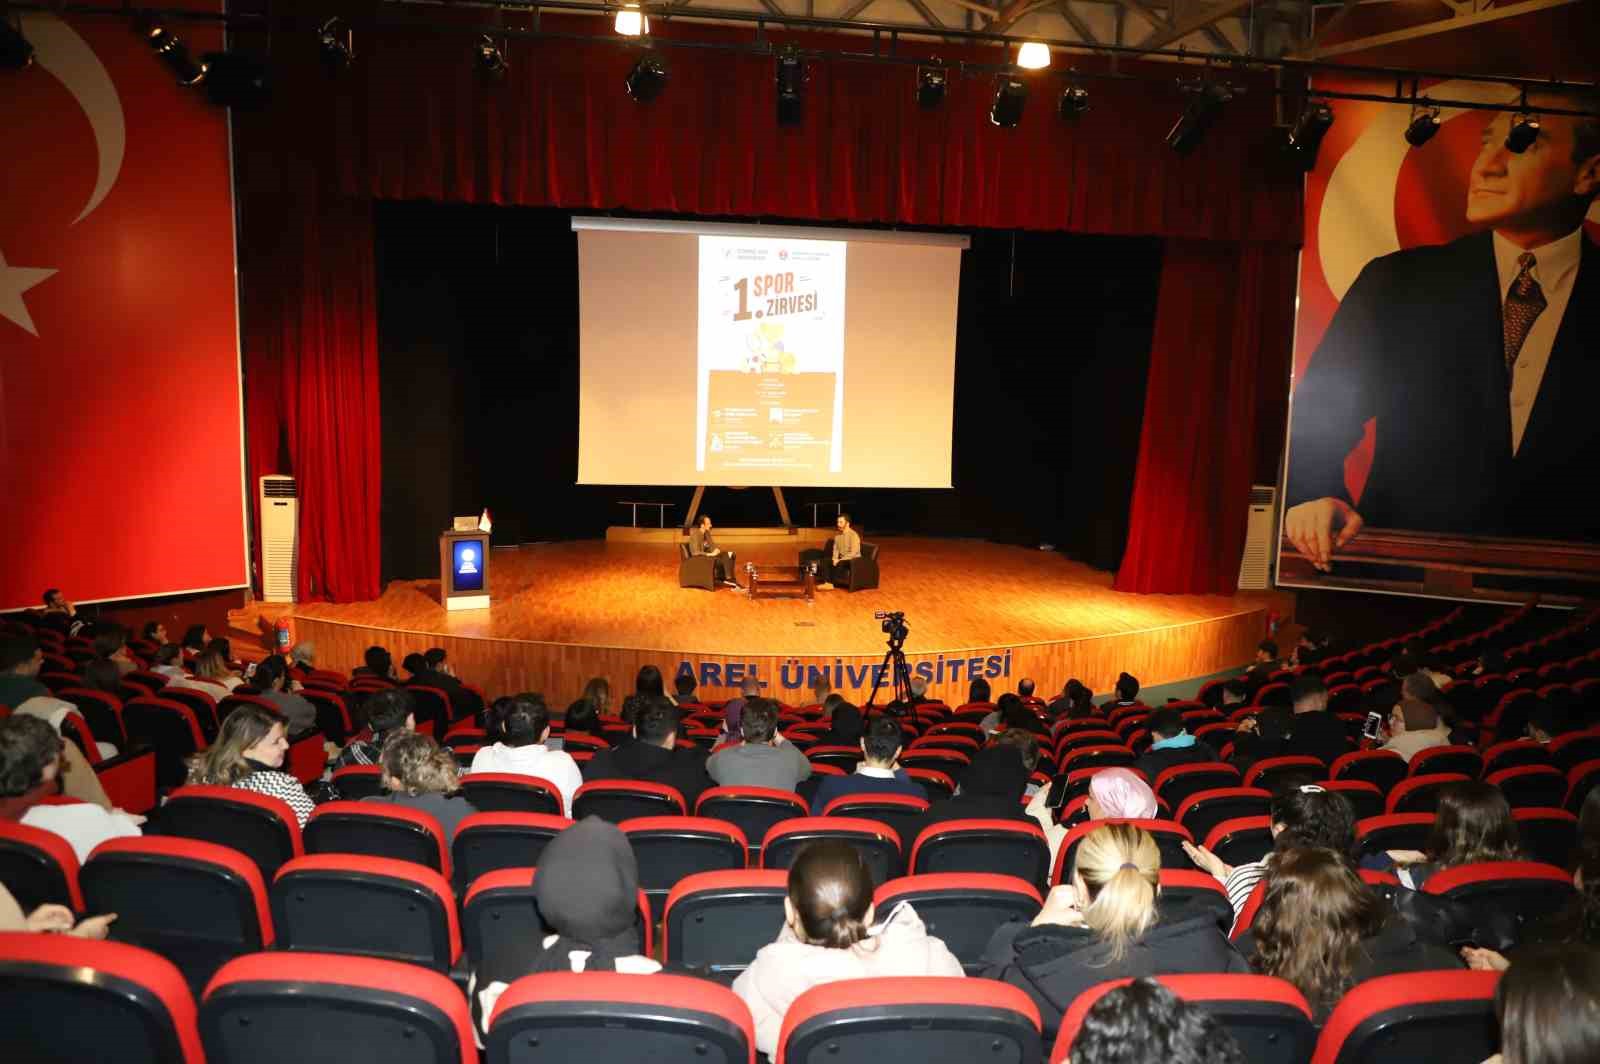 istanbul arel universitesinde 1 spor zirvesi kongresi duzenlendi 0 NpTYZfll